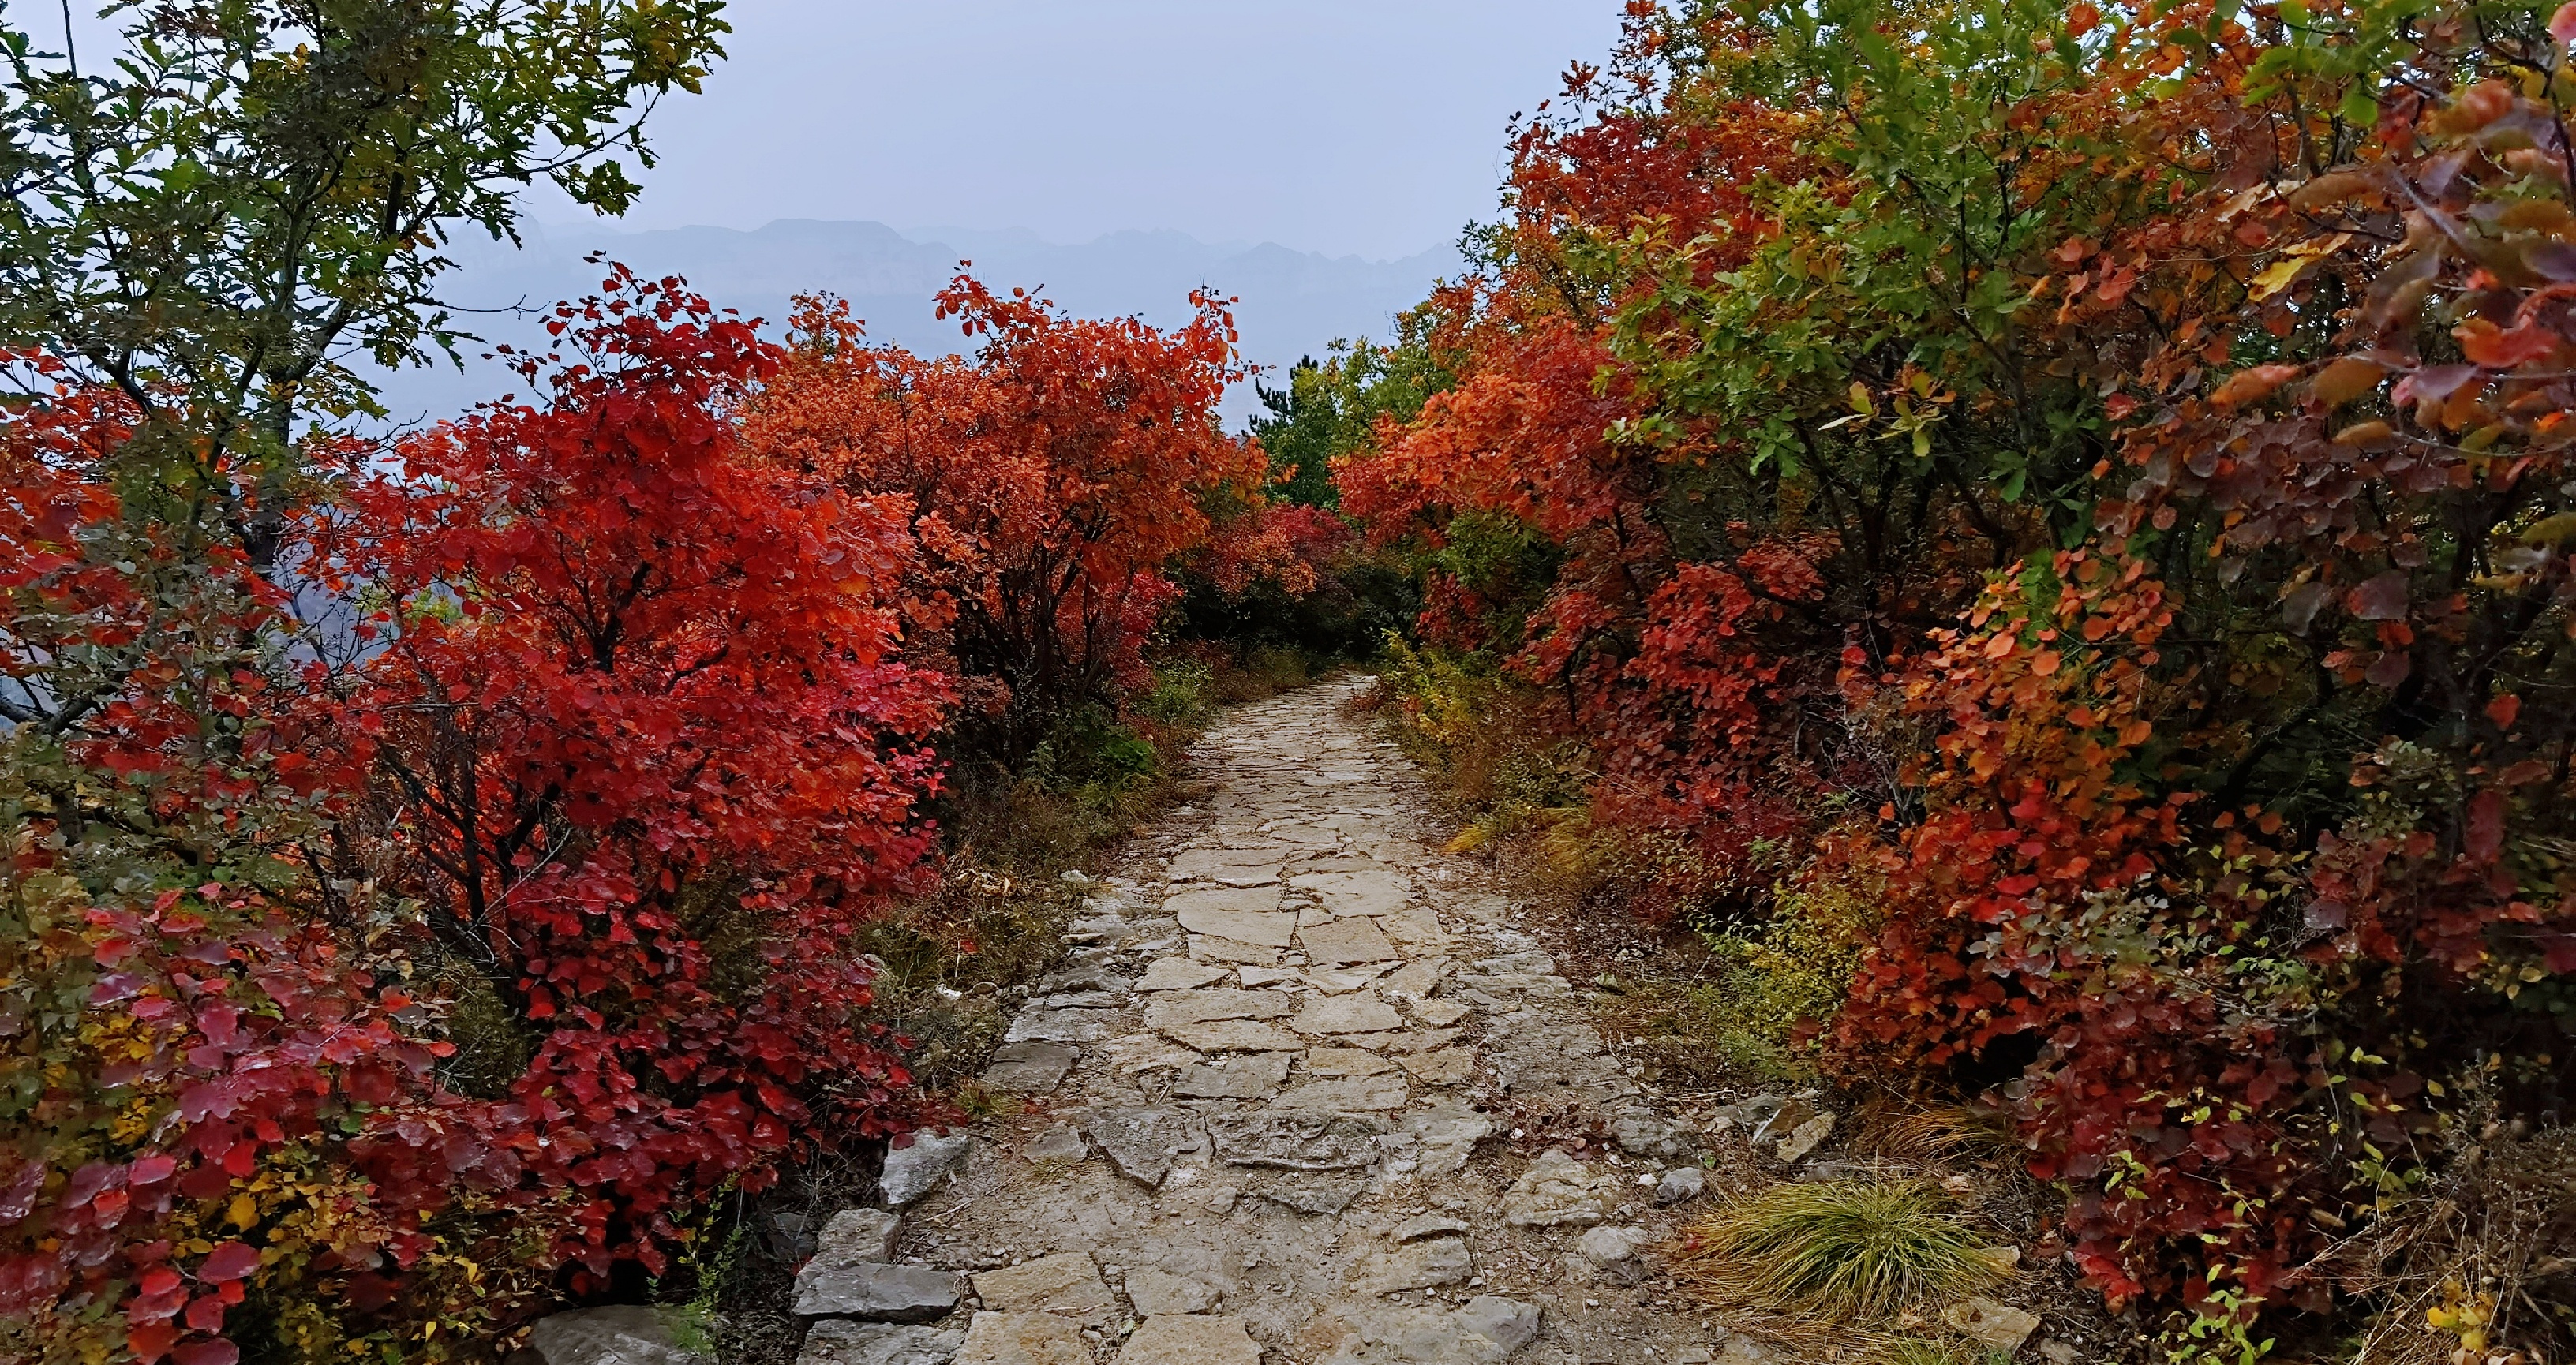 四方山景区知道秋色 慕名而来 满山遍野红色 视觉盛宴